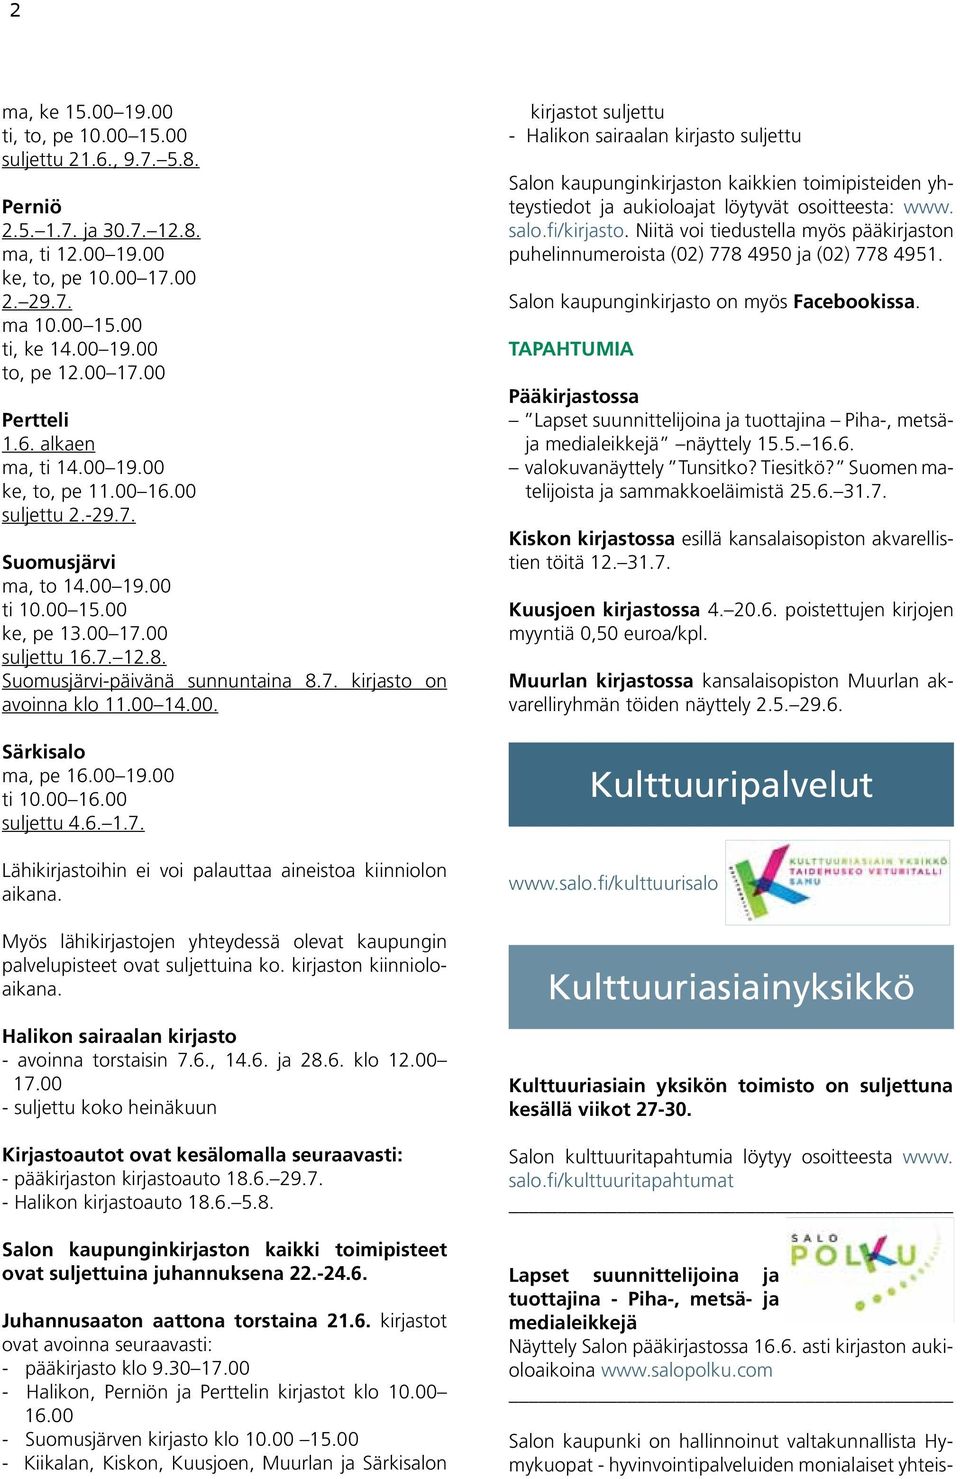 00 19.00 ti 10.00 15.00 ke, pe 13.00 17.00 suljettu 16.7. 12.8. Suomusjärvi-päivänä sunnuntaina 8.7. kirjasto on avoinna klo 11.00 14.00. Särkisalo ma, pe 16.00 19.00 ti 10.00 16.00 suljettu 4.6. 1.7. Lähikirjastoihin ei voi palauttaa aineistoa kiinniolon aikana.